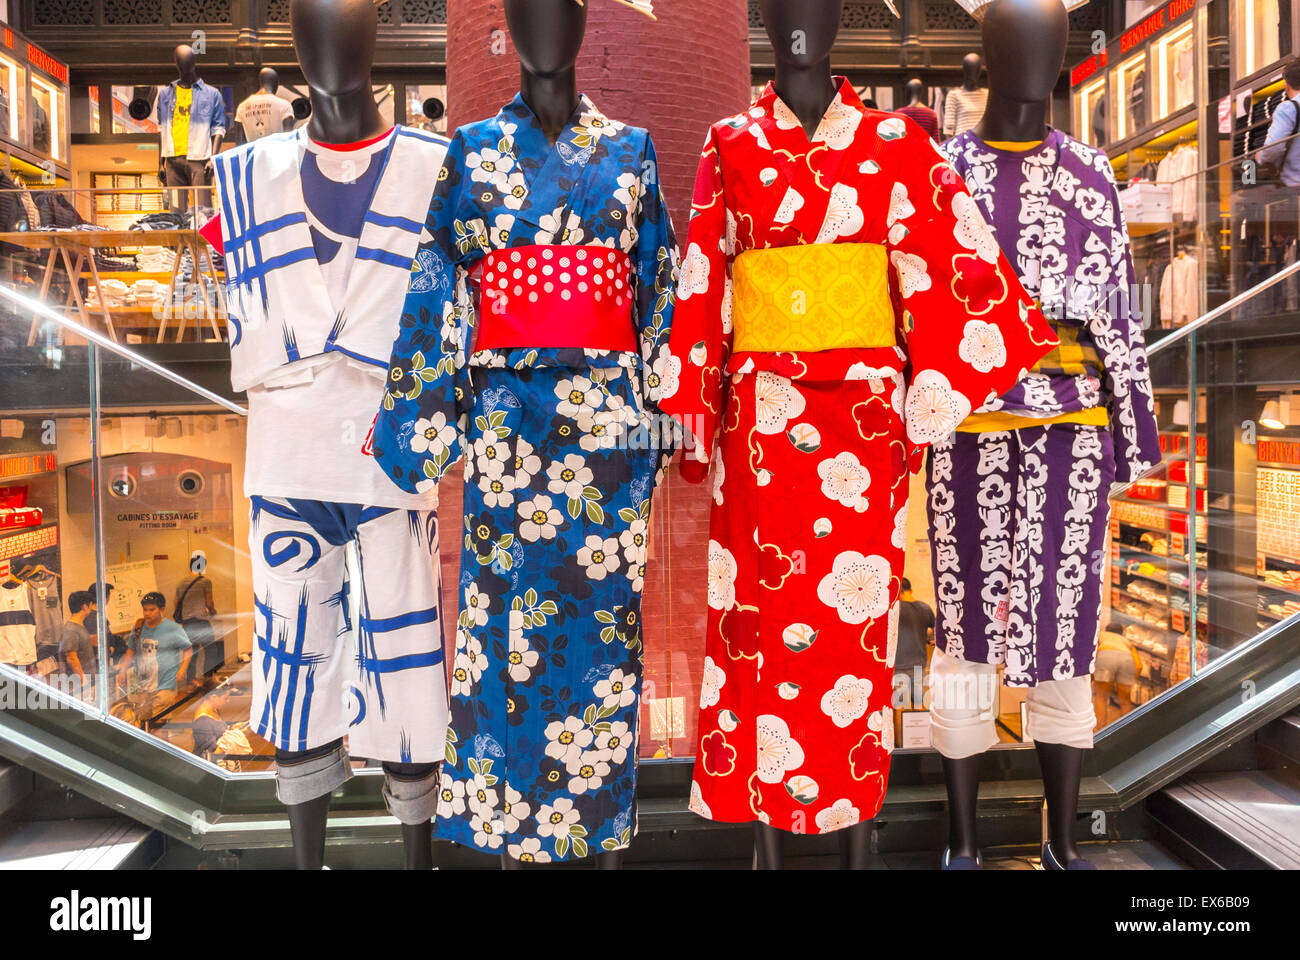 Paris, France, la présentation en magasin dans le quartier du Marais.  'Intérieur', magasin de vêtements Uniqlo Afficher la culture japonaise,  Kimono robes traditionnelles Photo Stock - Alamy